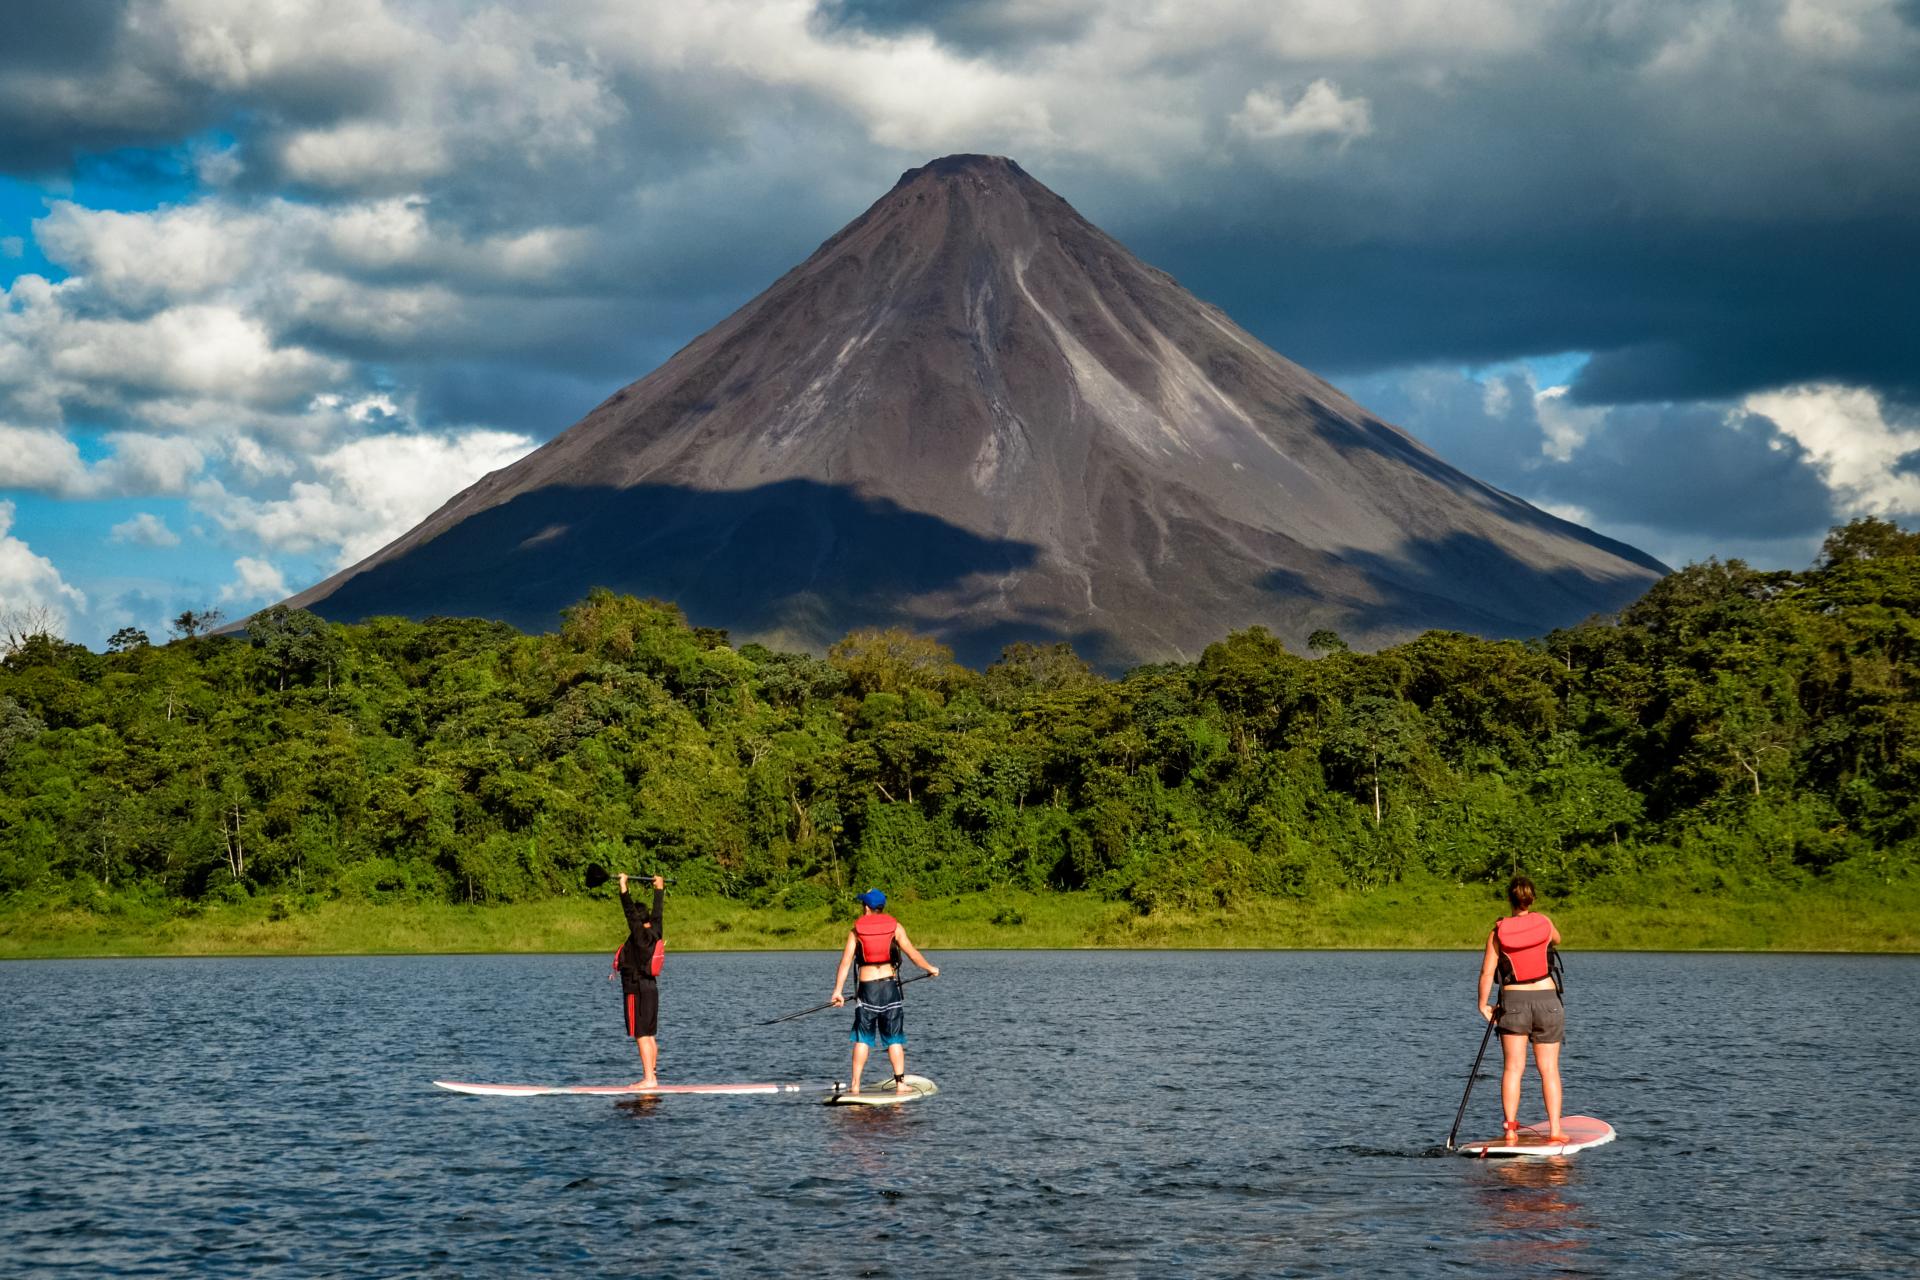 Erleben Sie eine einmalige Rundreise durch das schöne Costa Rica